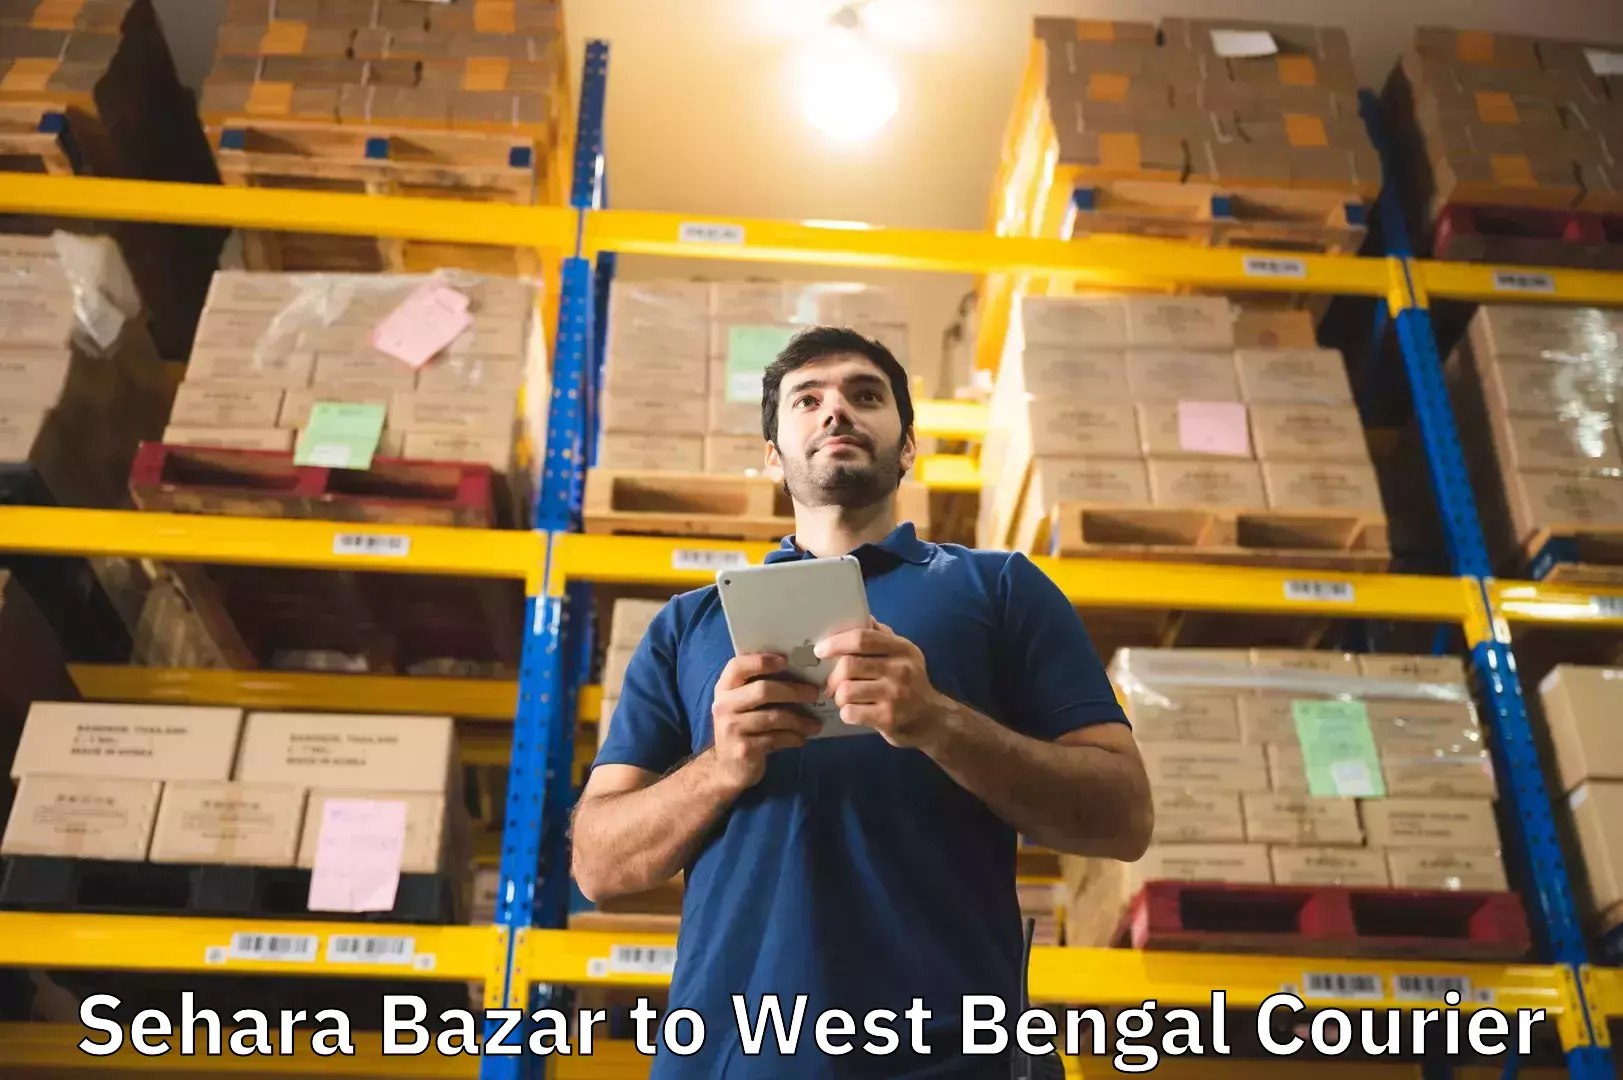 Baggage relocation service Sehara Bazar to Nanoor